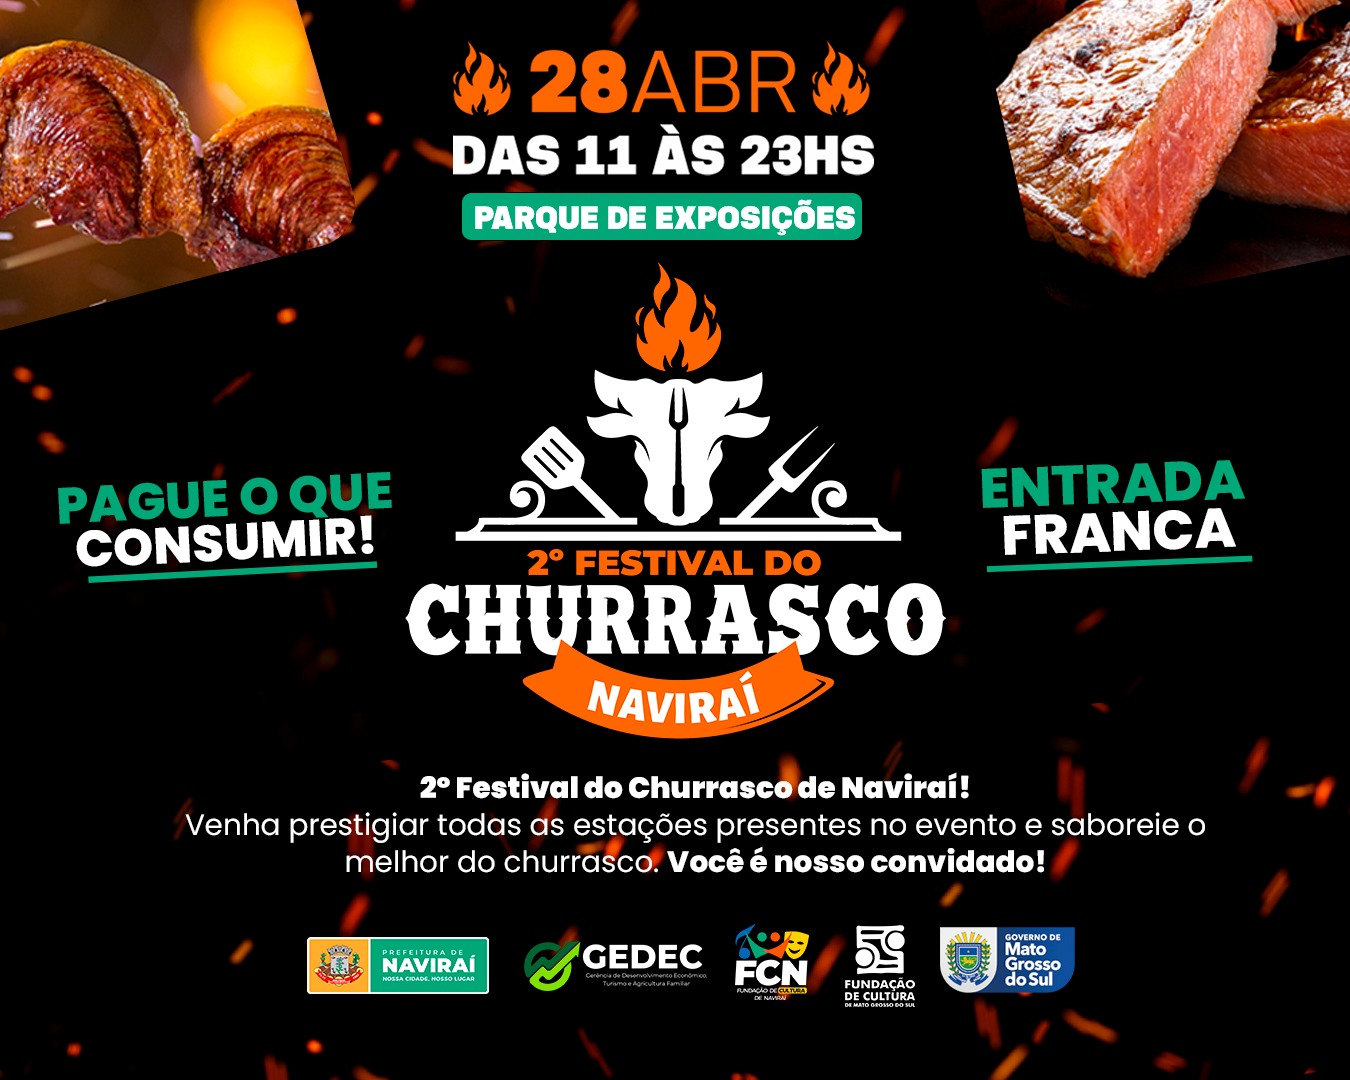 Com 12 horas de evento, 2⁰ Festival do Churrasco de Naviraí acontecerá domingo no Parque de Exposições